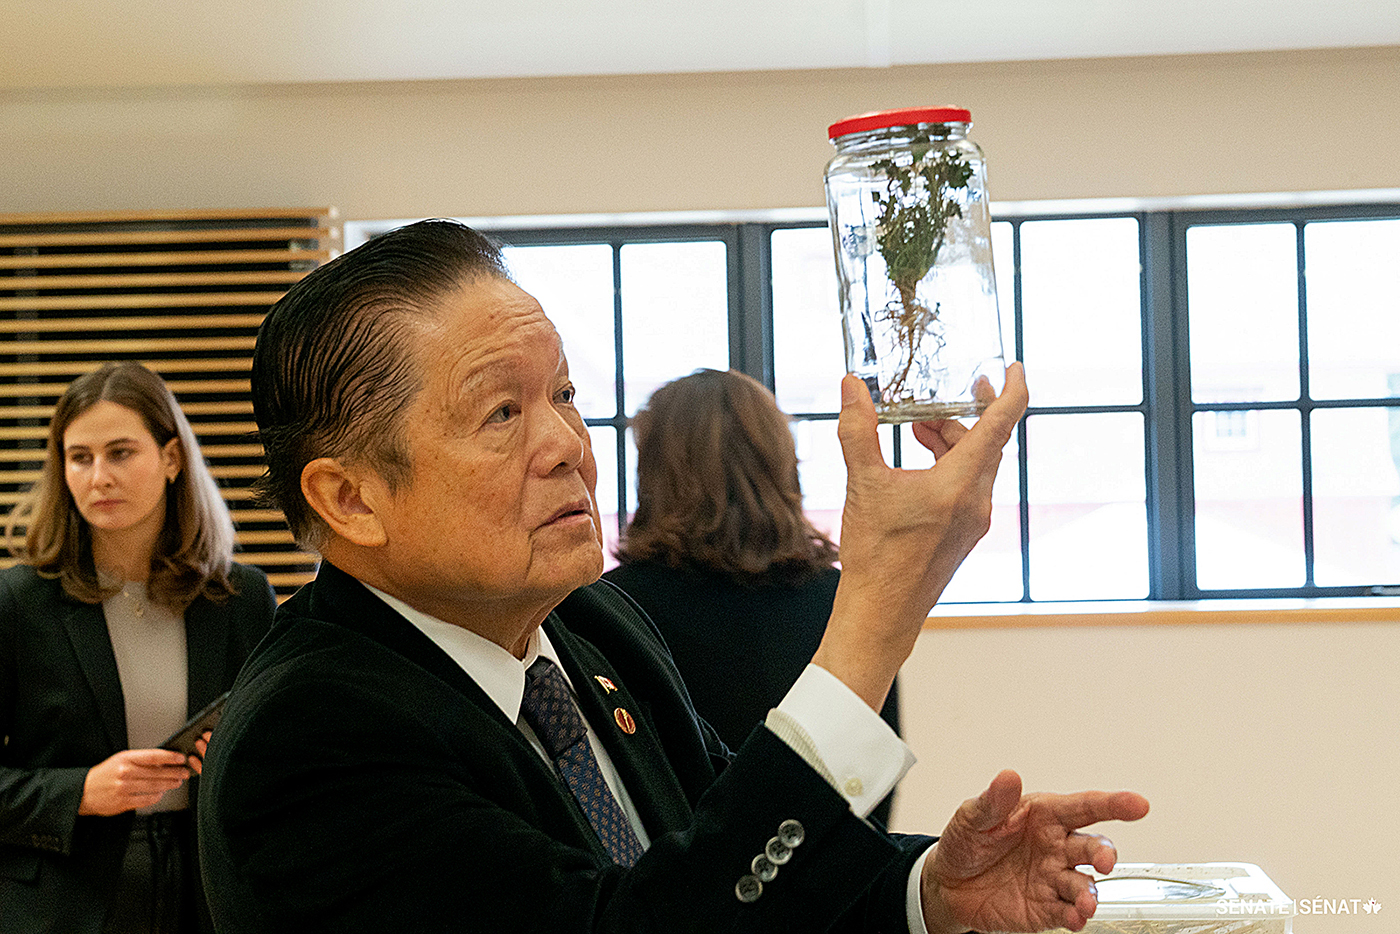 Le sénateur Victor Oh examine de plus près les racines d’une plante au Musée canadien de l’alimentation et de l’agriculture.